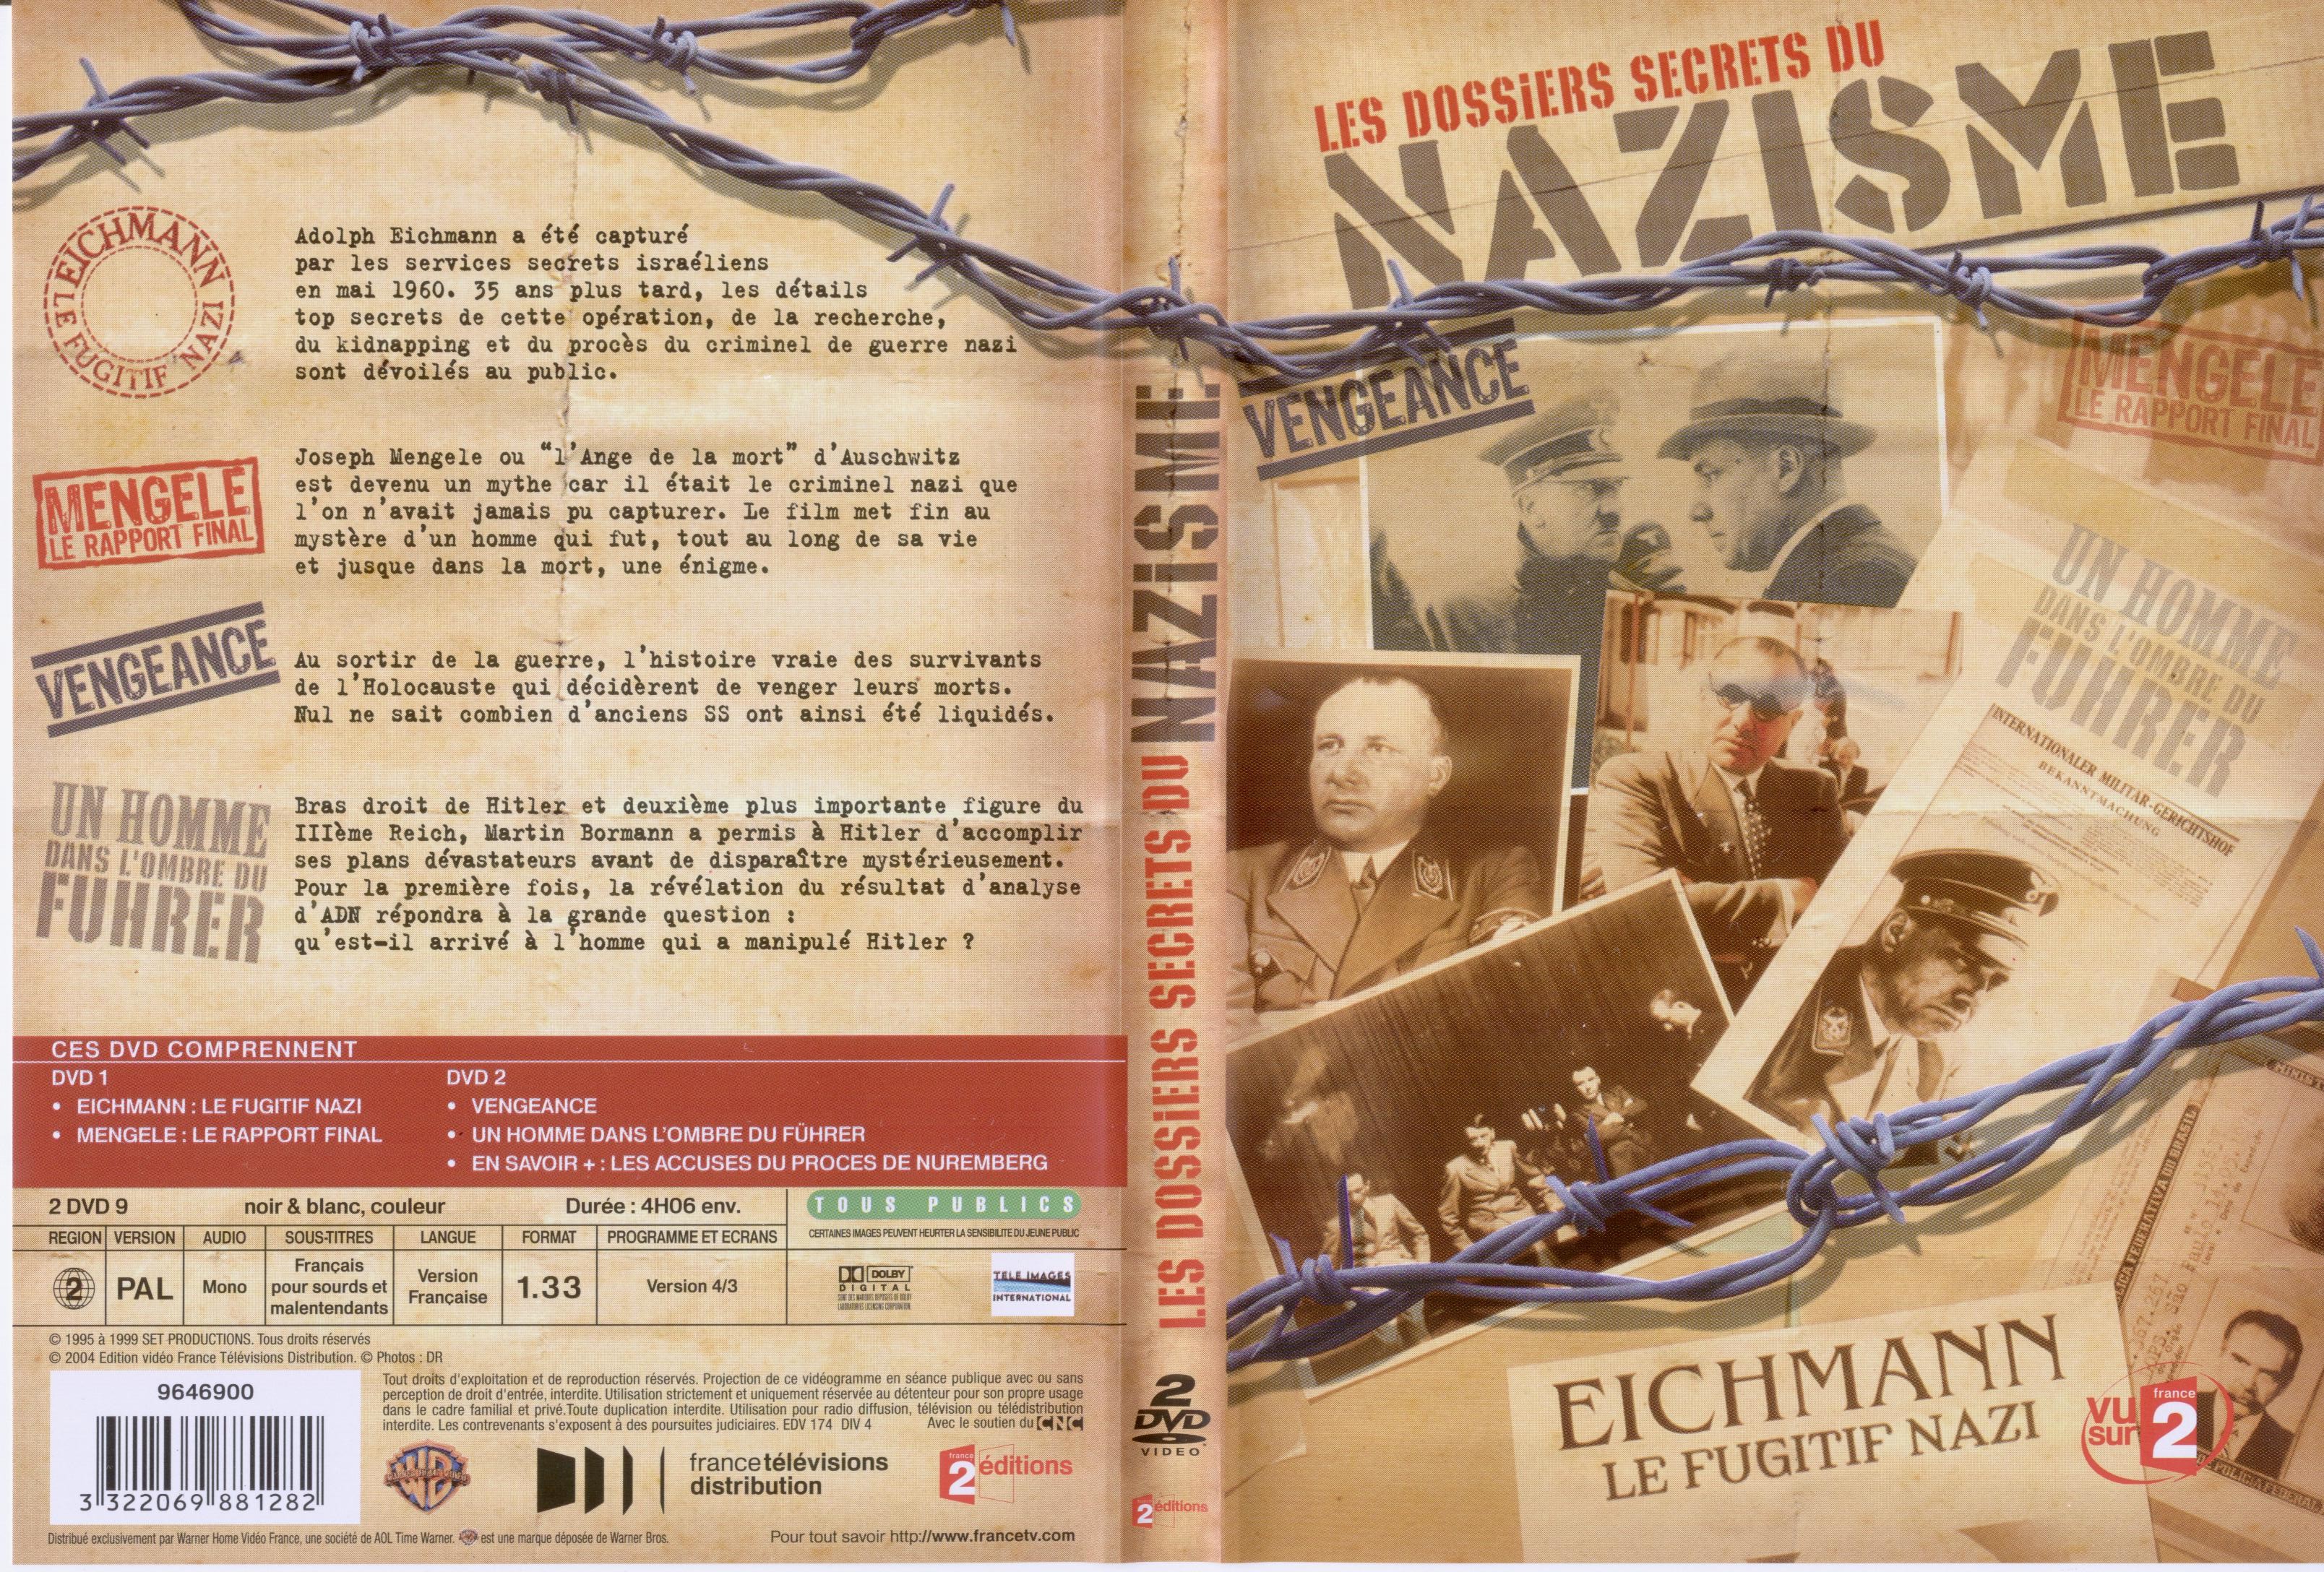 Jaquette DVD Les dossiers secrets du Nazisme